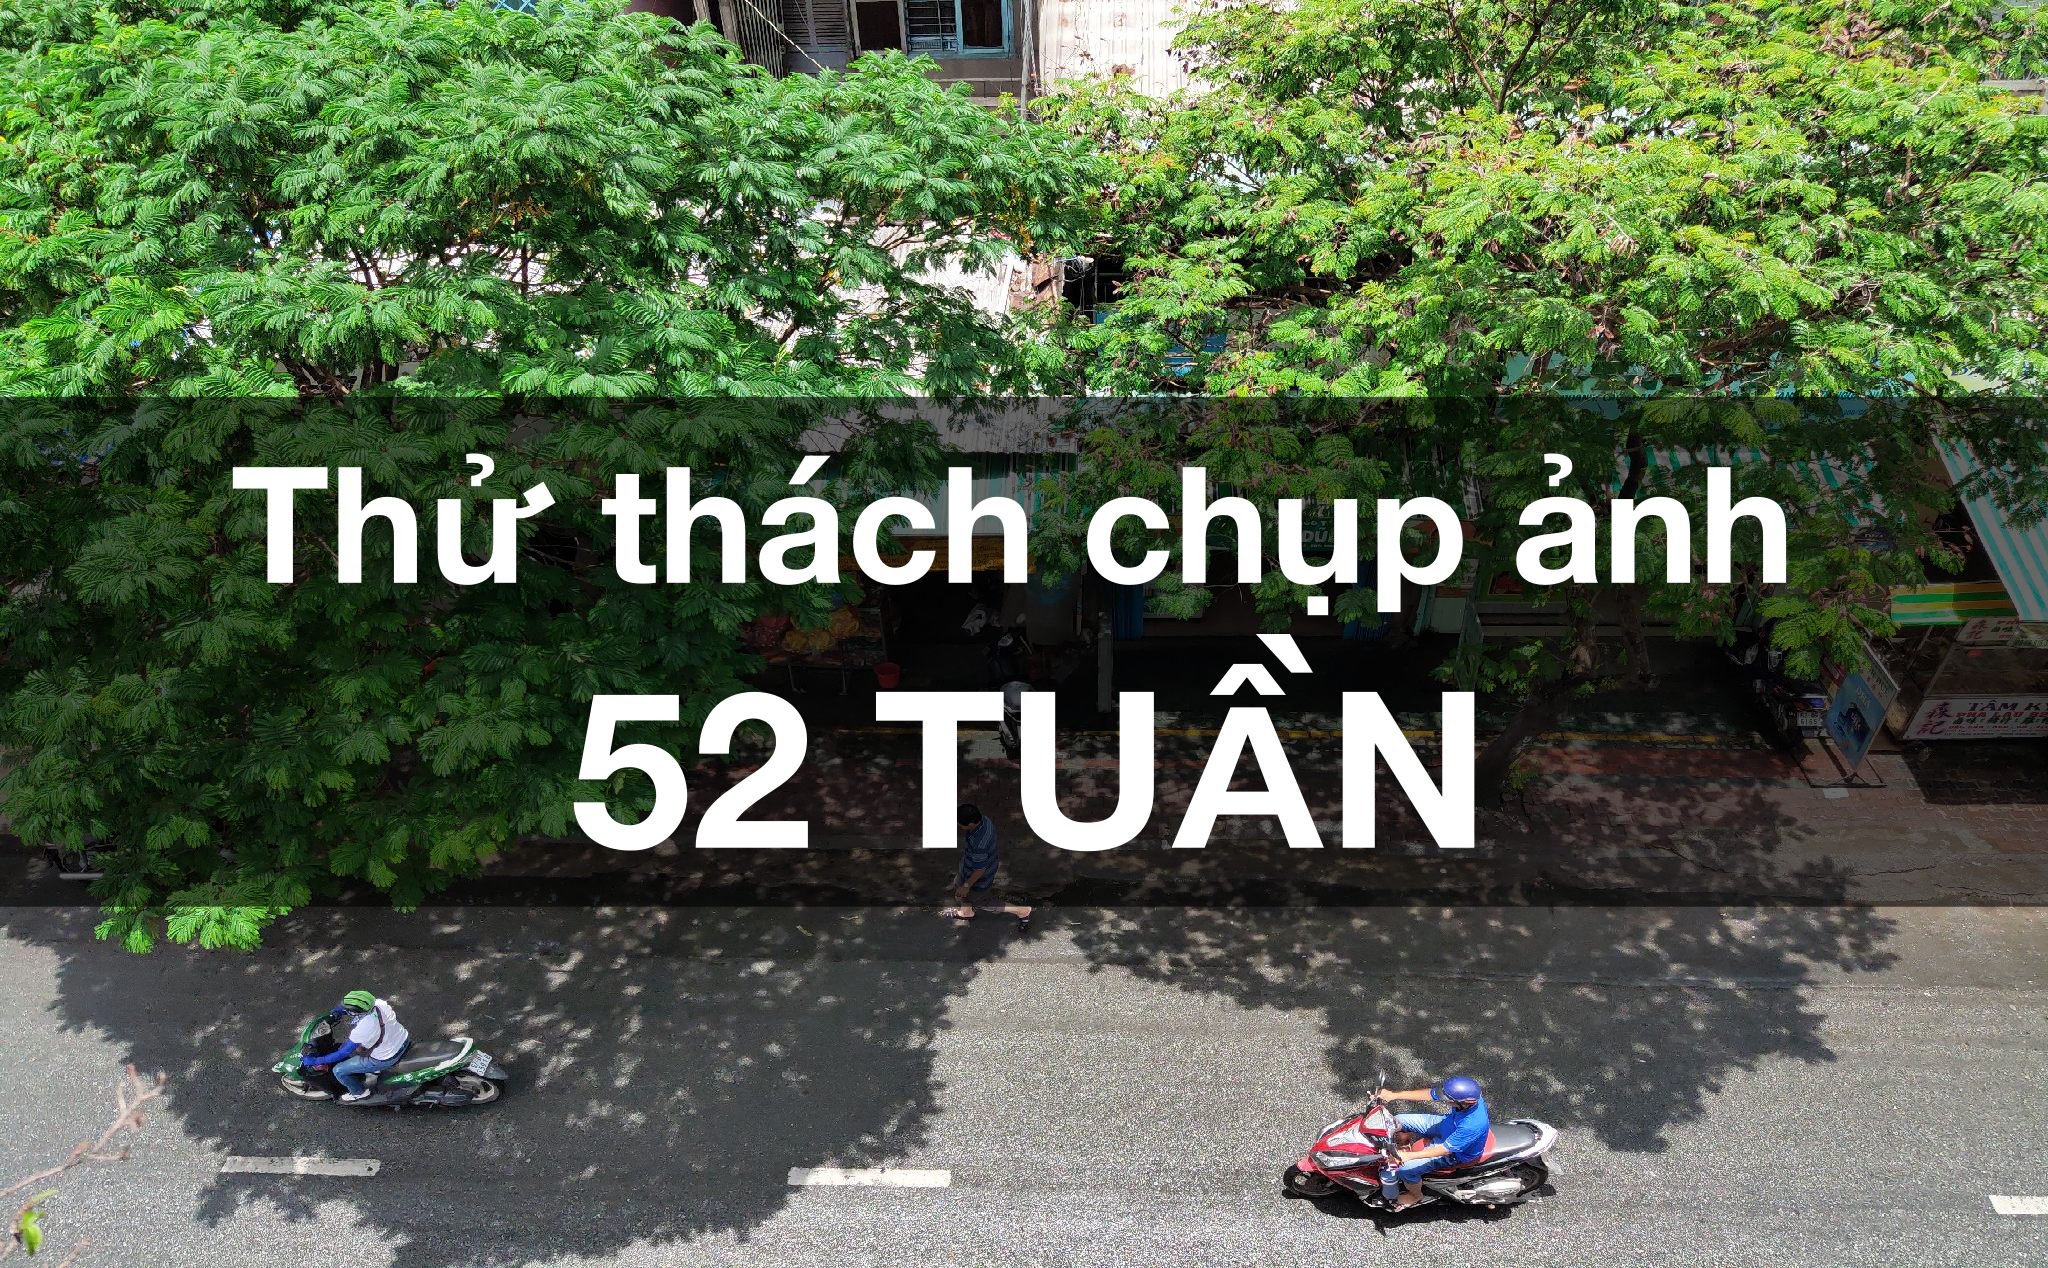 Loi_khuyen__hay_thuc_hanh_chup_anh_lien_tuc_52_tuan__de_cai_thien_tay_nghe_tot_hon